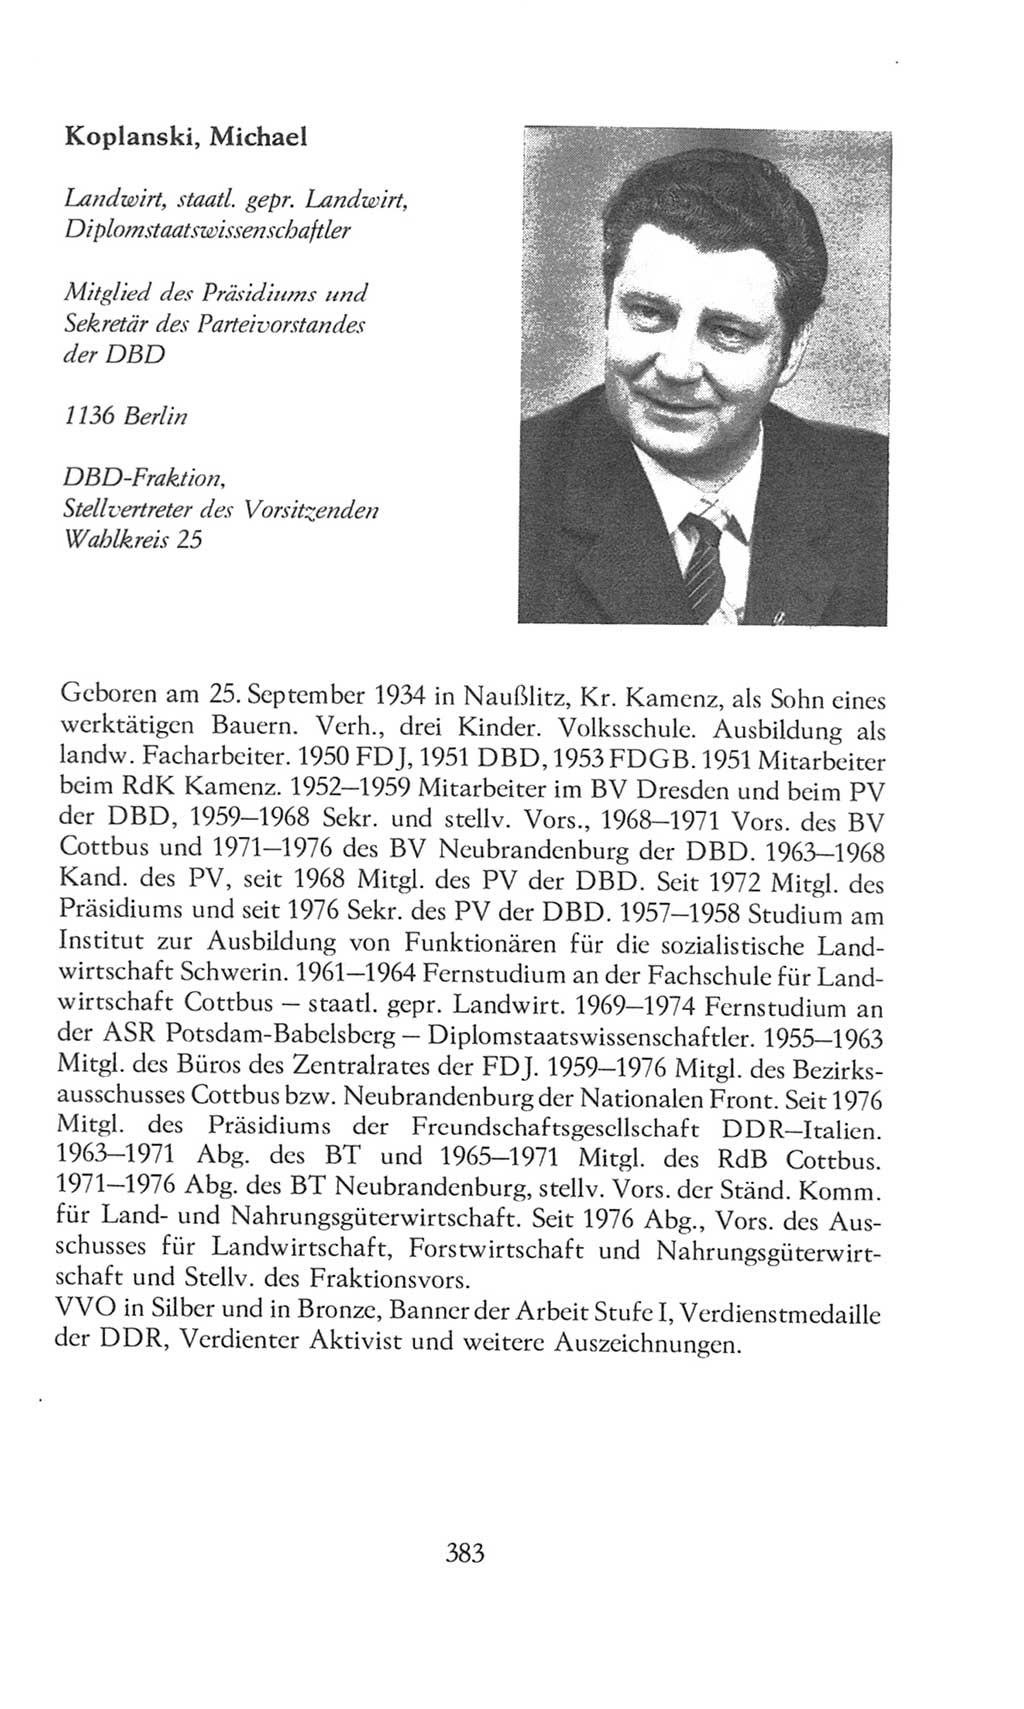 Volkskammer (VK) der Deutschen Demokratischen Republik (DDR), 8. Wahlperiode 1981-1986, Seite 383 (VK. DDR 8. WP. 1981-1986, S. 383)